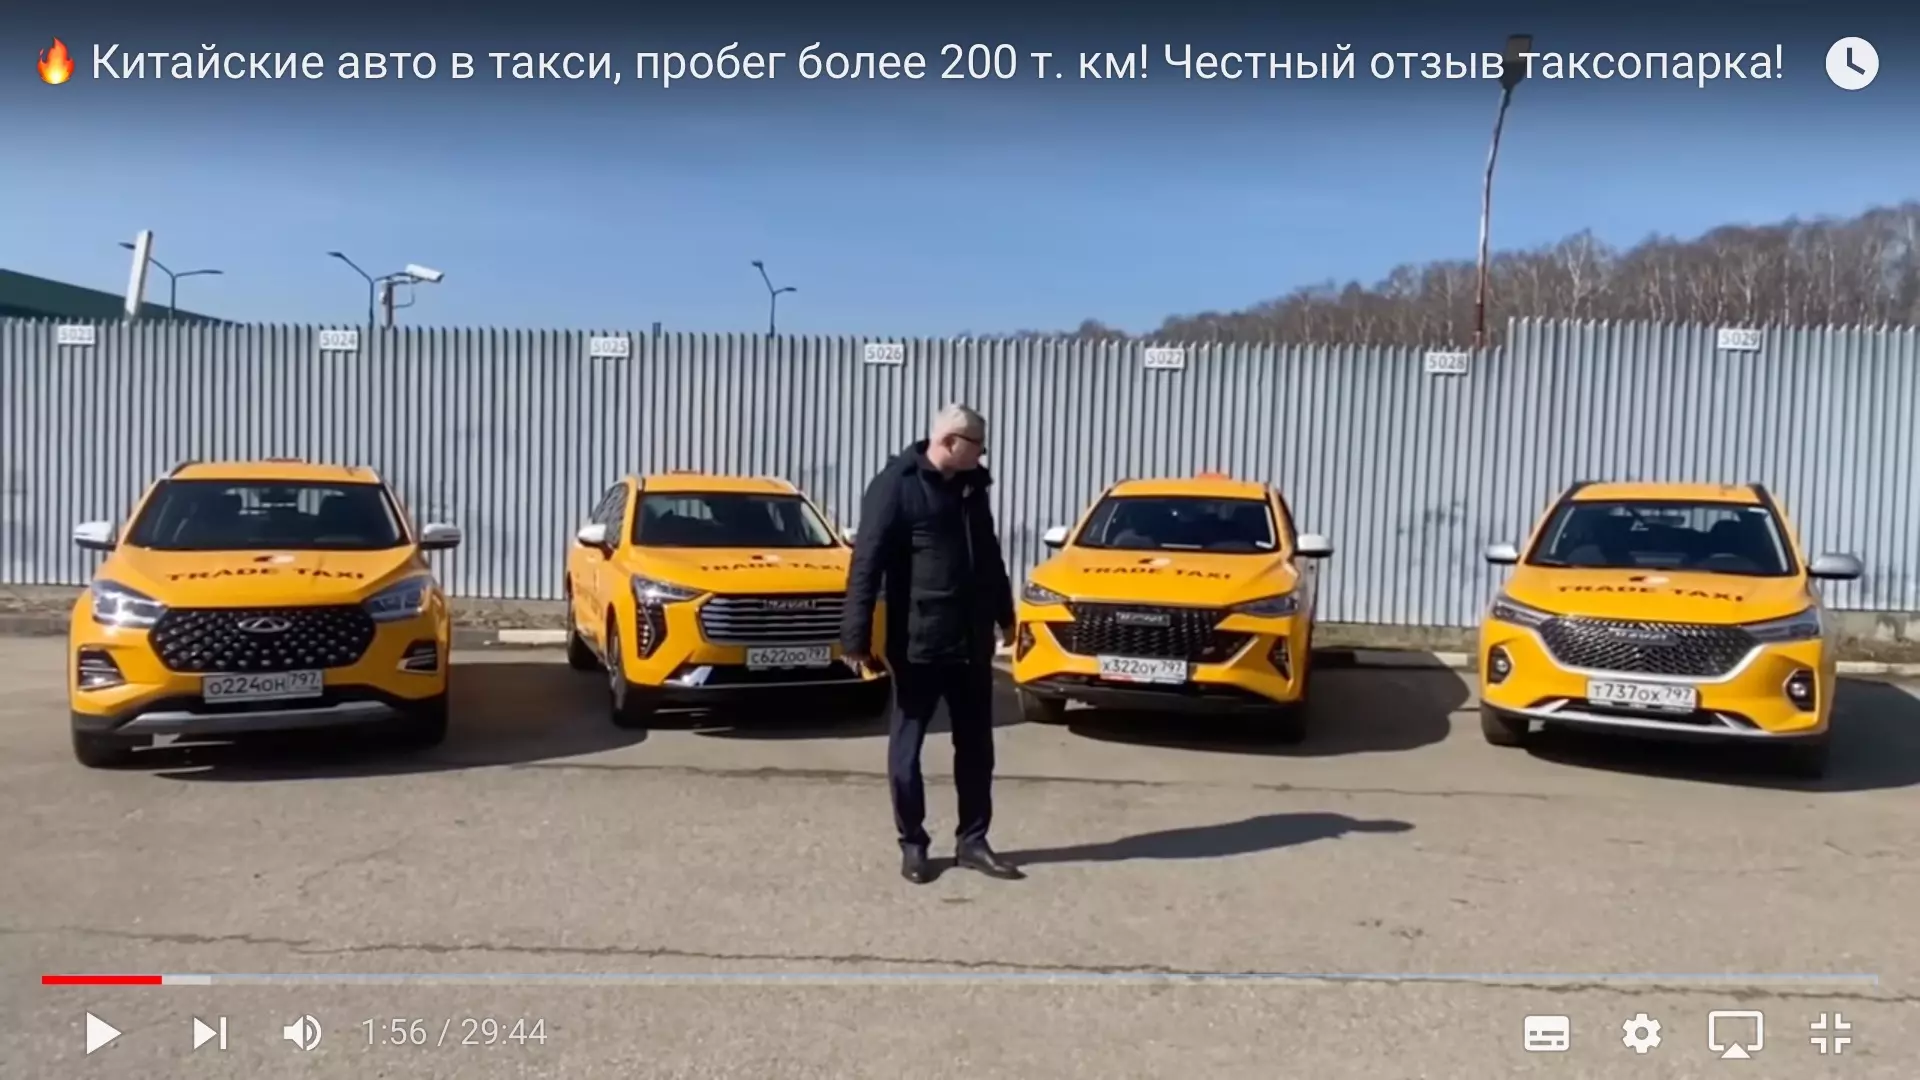 С приветом Вану от Ивана: как российские таксопарки улучшают китайские автомобили